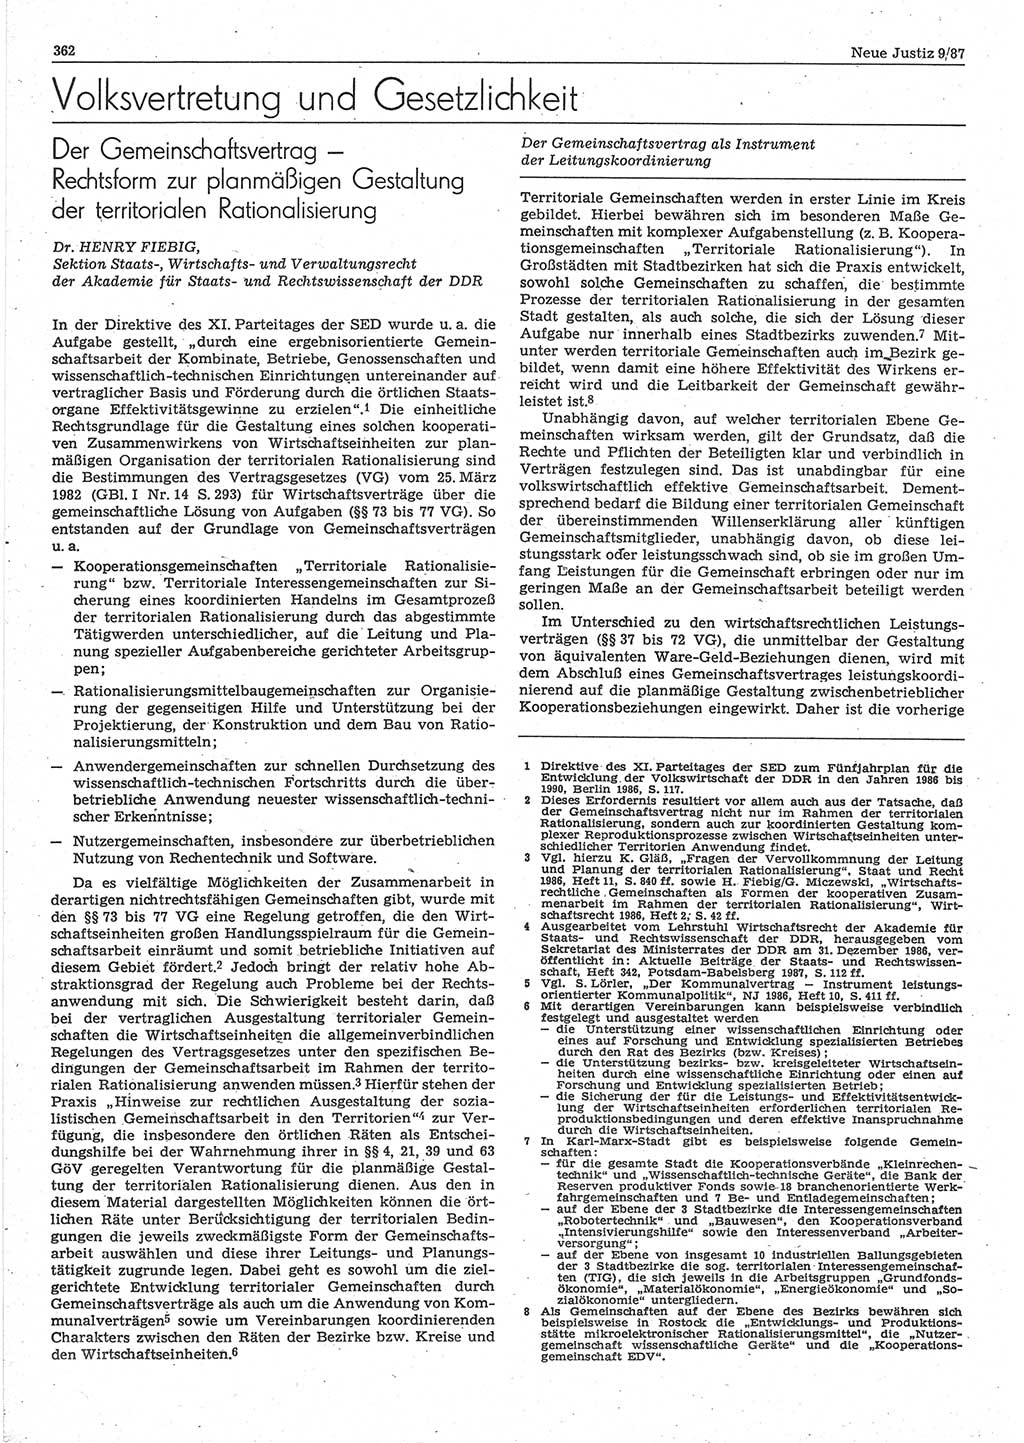 Neue Justiz (NJ), Zeitschrift für sozialistisches Recht und Gesetzlichkeit [Deutsche Demokratische Republik (DDR)], 41. Jahrgang 1987, Seite 362 (NJ DDR 1987, S. 362)